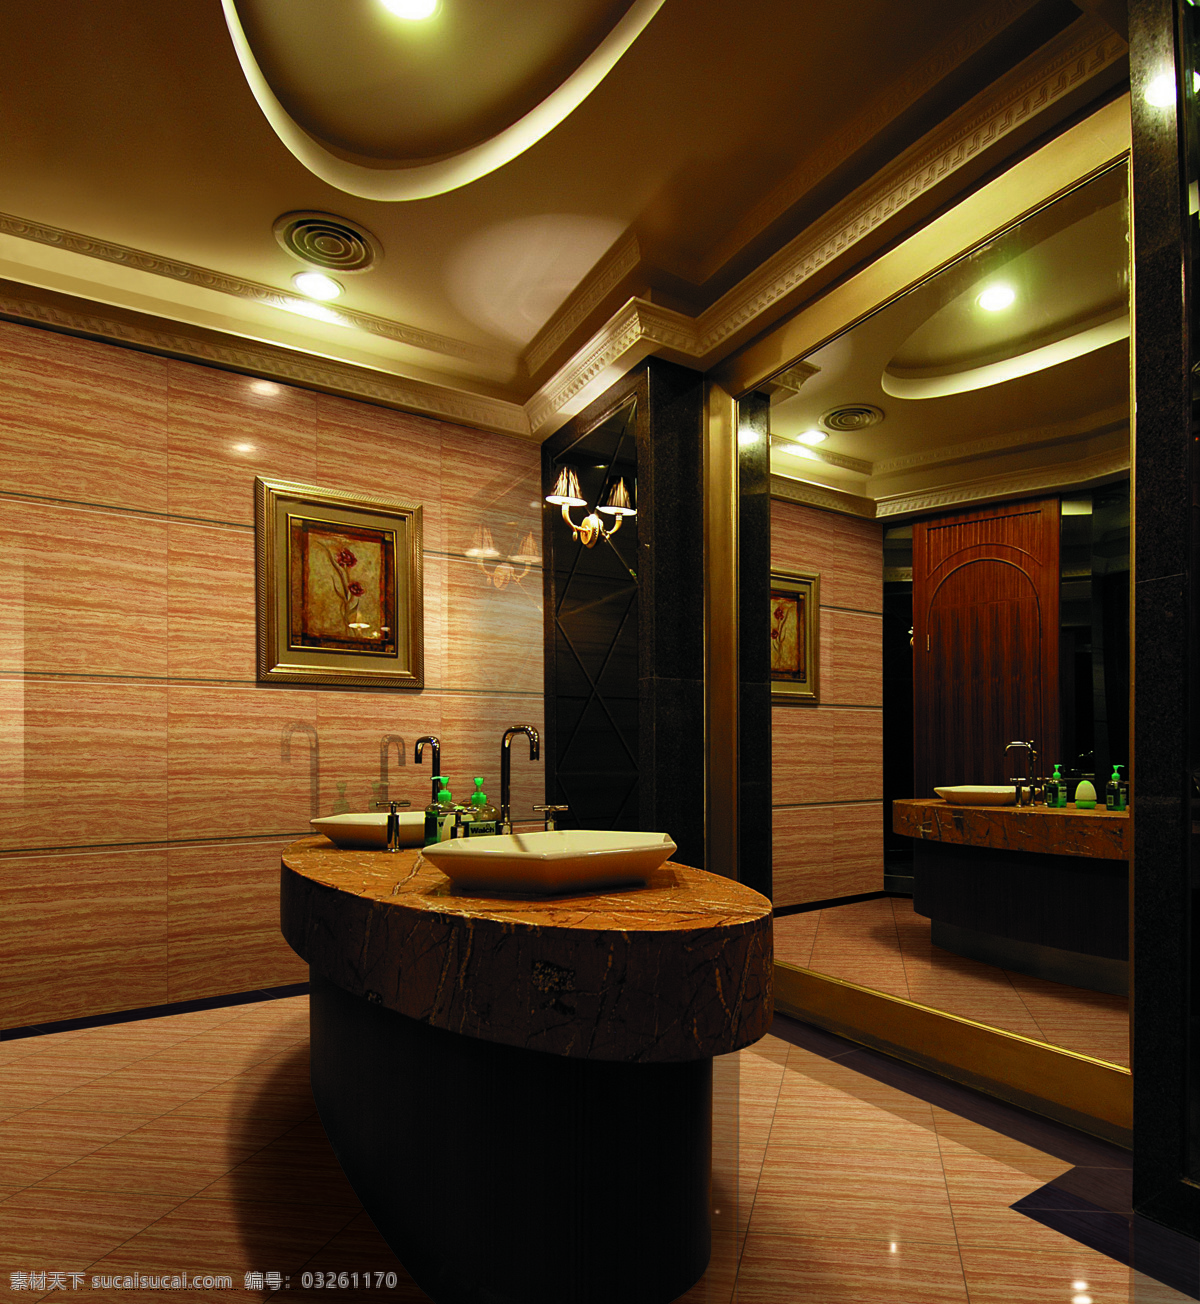 酒店 壁画 瓷砖 建筑园林 欧式 抛光砖 室内摄影 卫浴空间 陶瓷 洗手间 装饰素材 室内设计